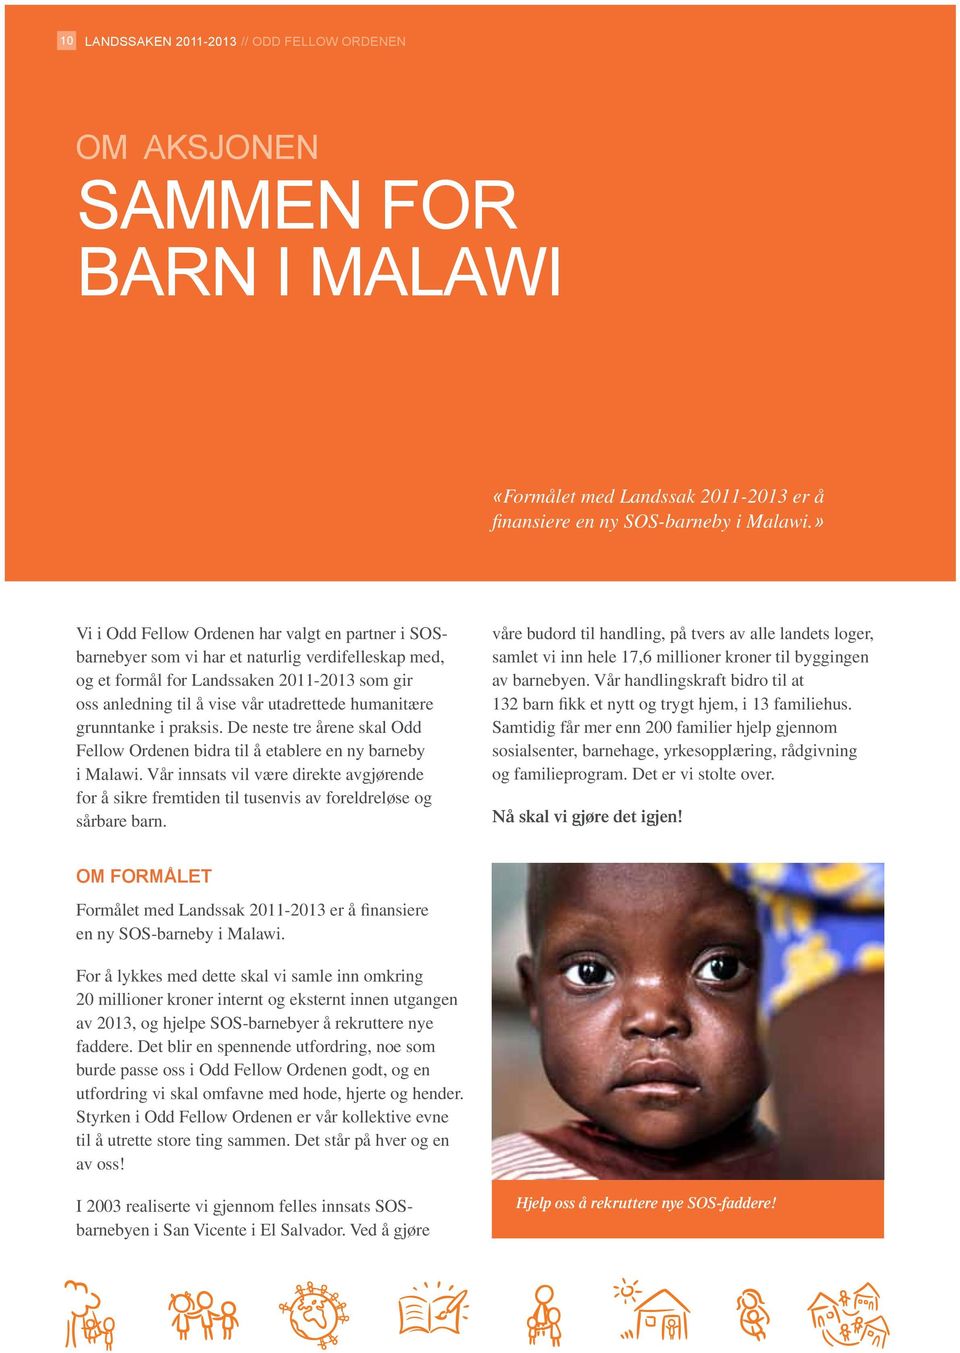 humanitære grunntanke i praksis. De neste tre årene skal Odd Fellow Ordenen bidra til å etablere en ny barneby i Malawi.